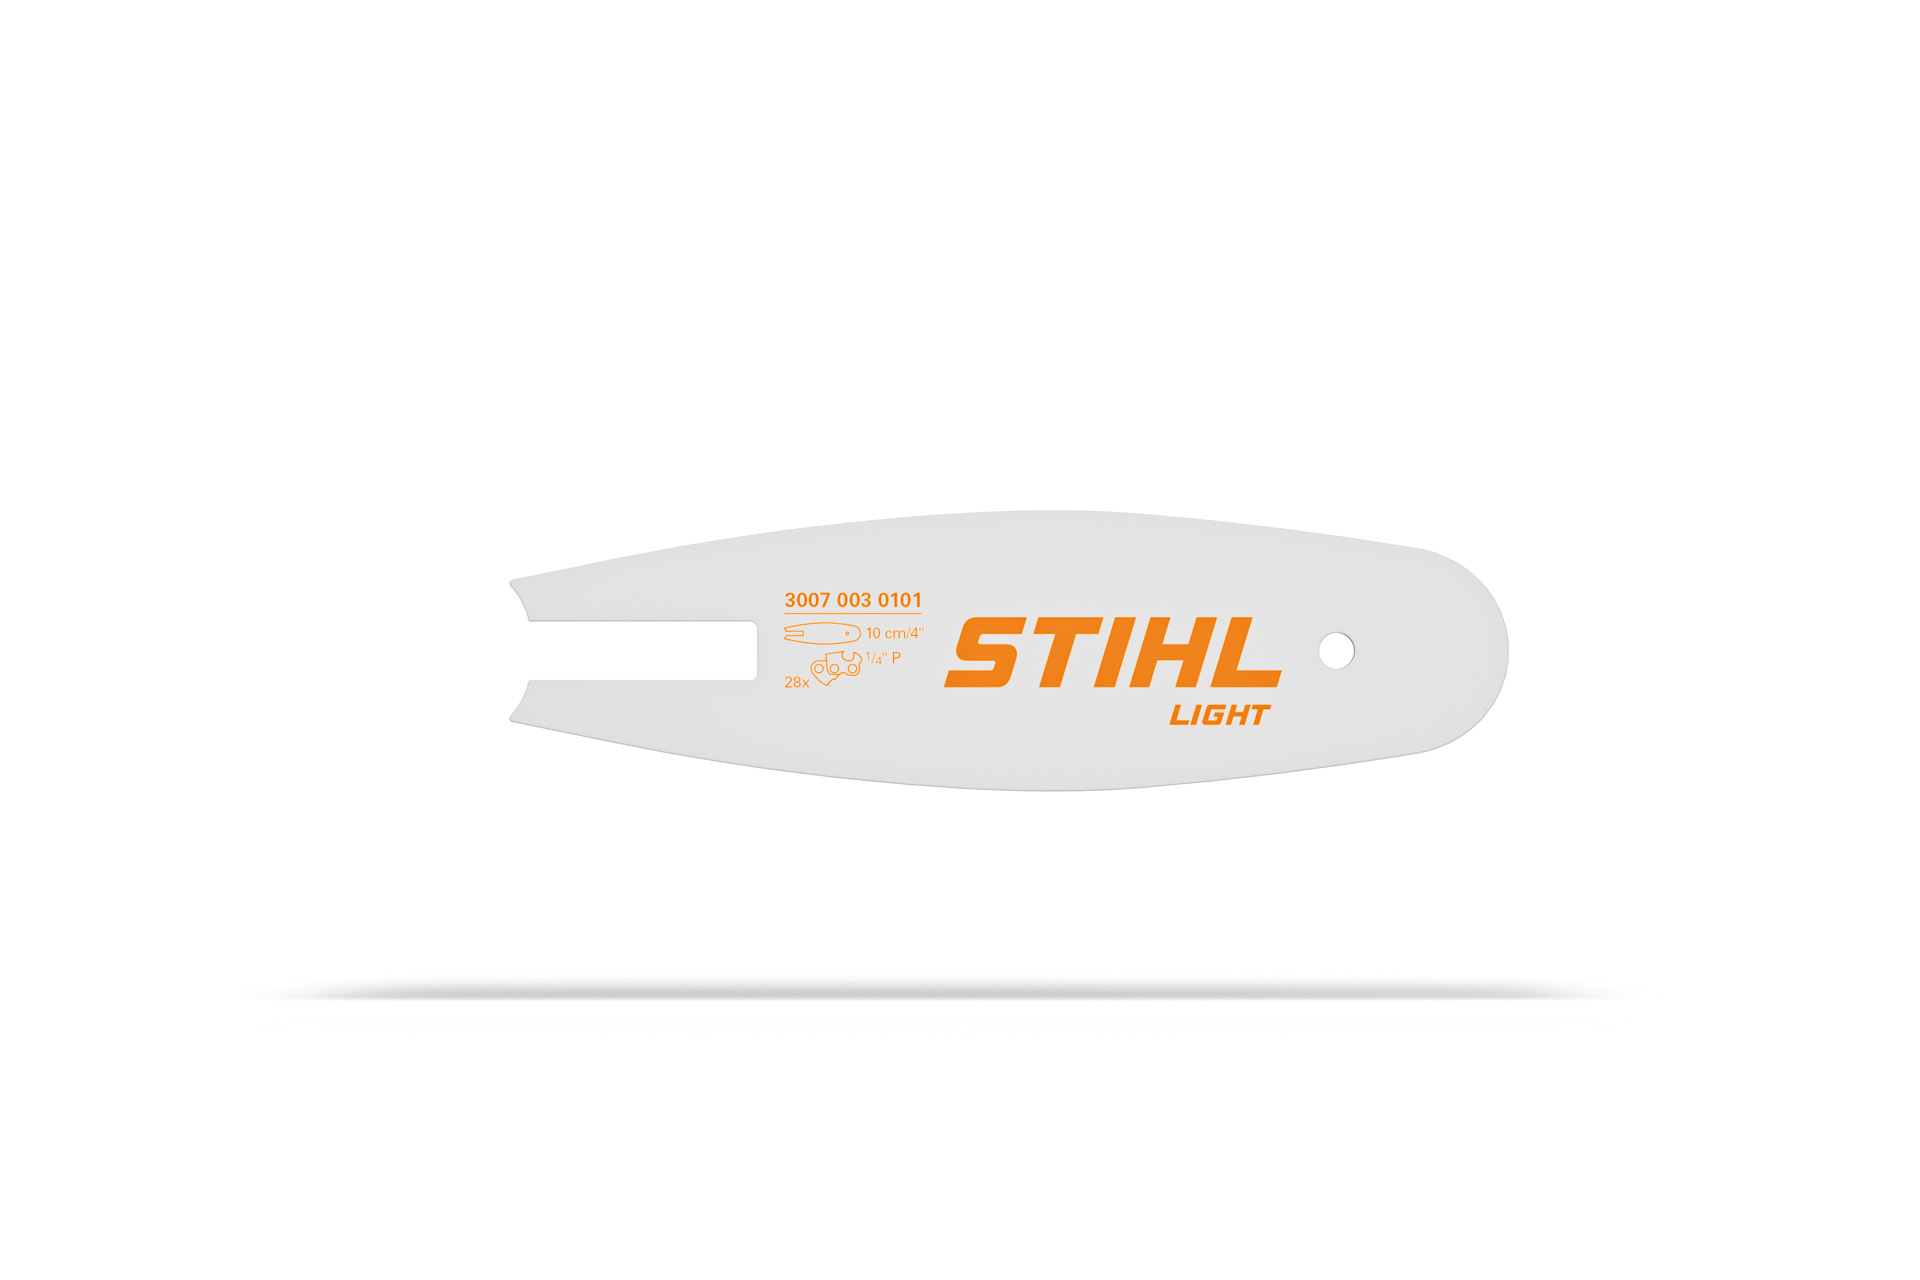 La mini tronçonneuse Stihl GTA 26 : une qualité exceptionnelle !